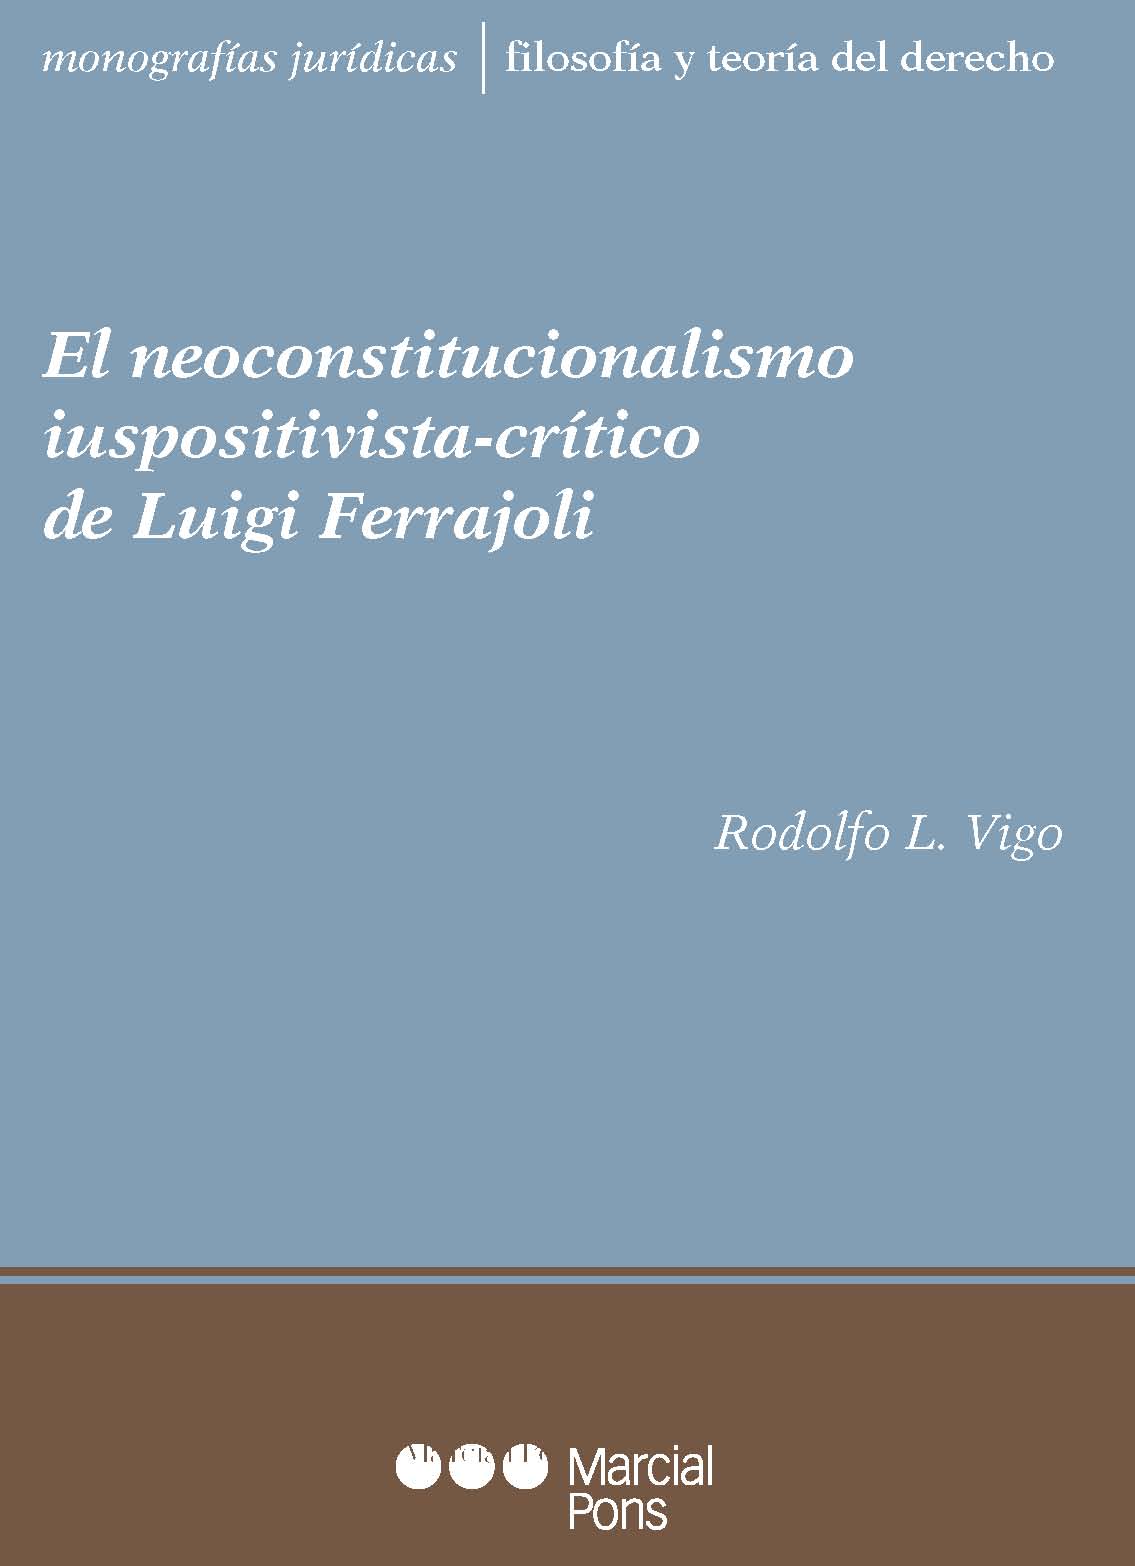 El neoconstitucionalismo iuspositivista-crítico de Luigi Ferrajoli